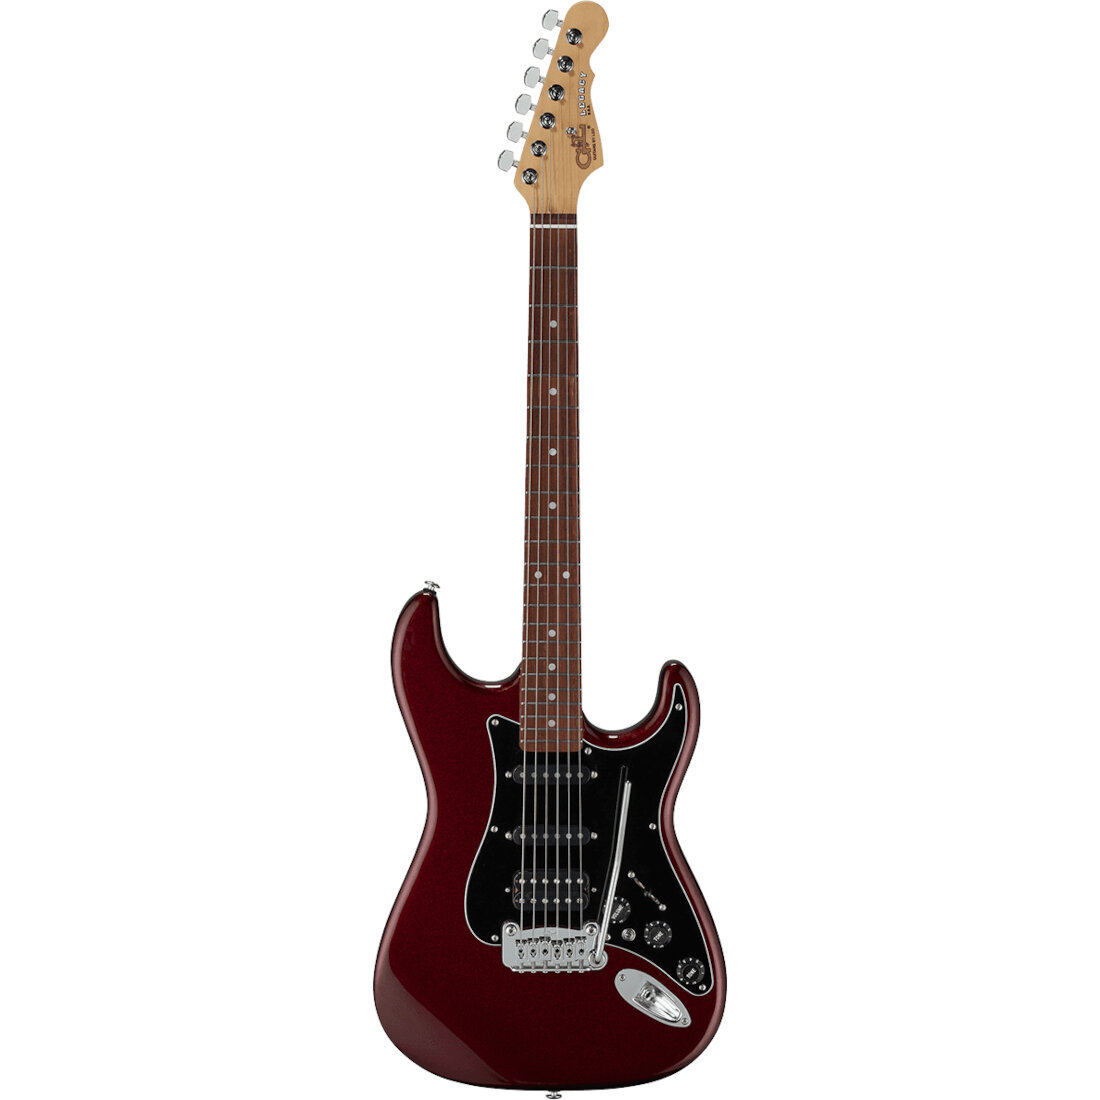 G&L Fullerton Deluxe Legacy HSS Ruby Red Metallic RW elektrische gitaar met deluxe gigbag